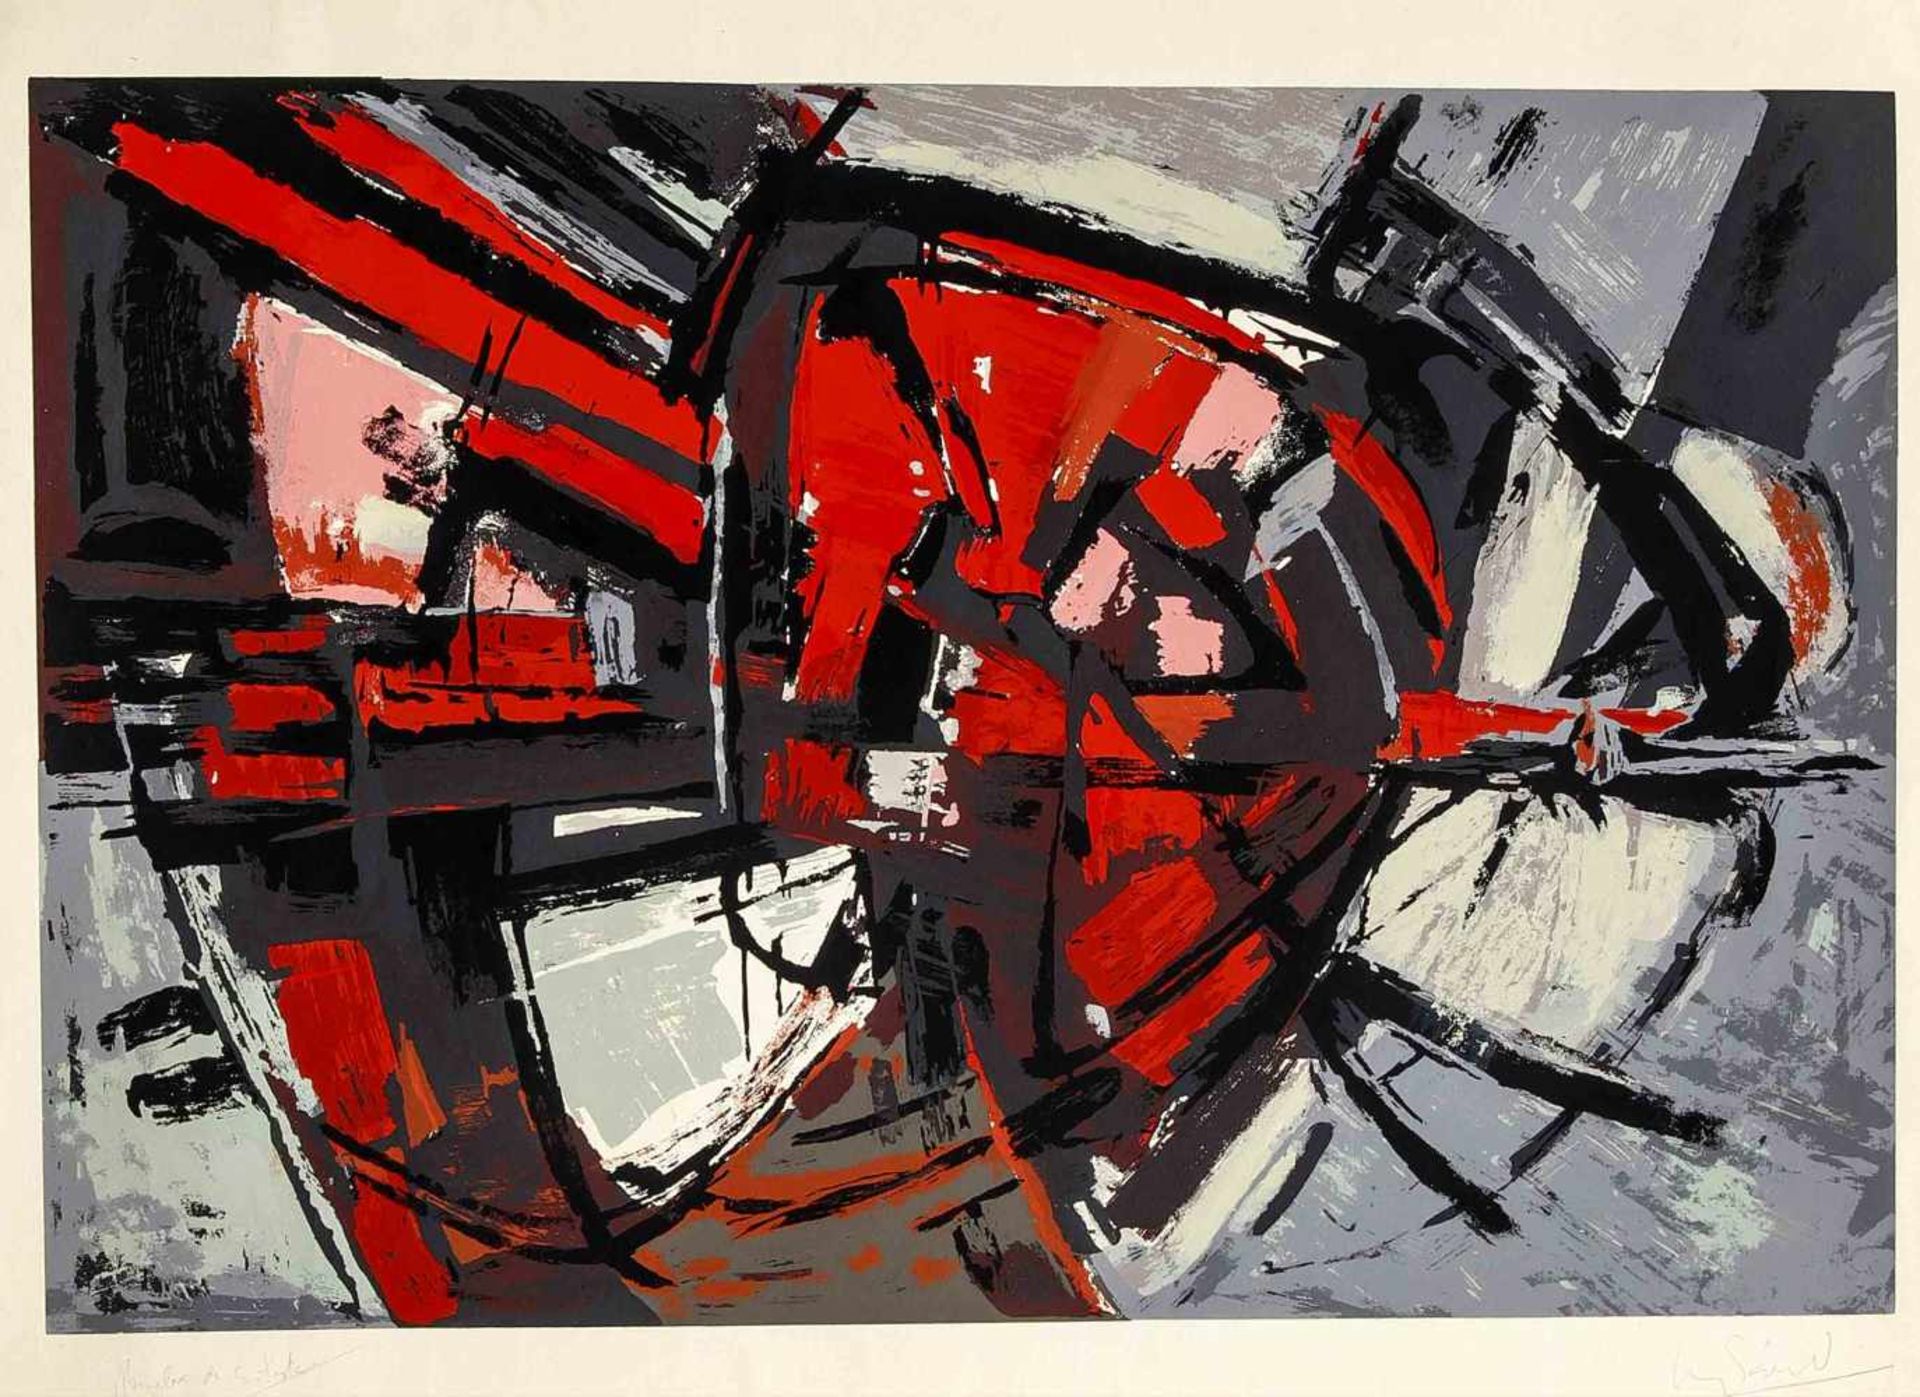 Luis Sáez (1925-2010), spanischer Maler aus Burgos, studierte ebendort sowie in Madrid undParis.